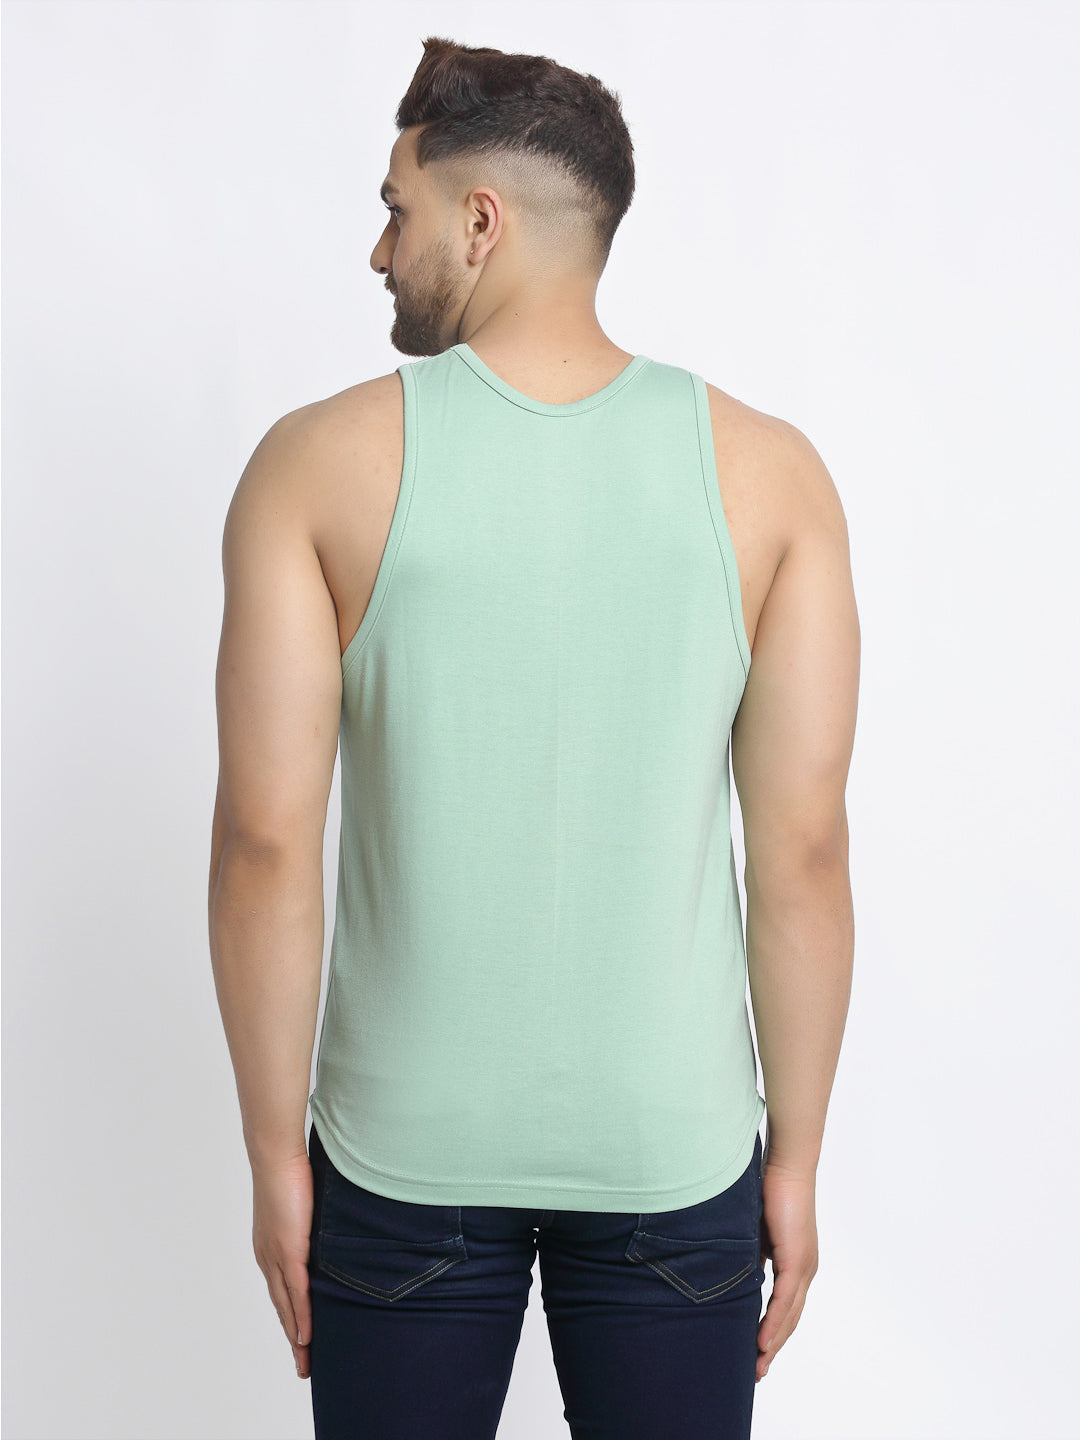 Original Printed Innerwear Gym Vest - Friskers